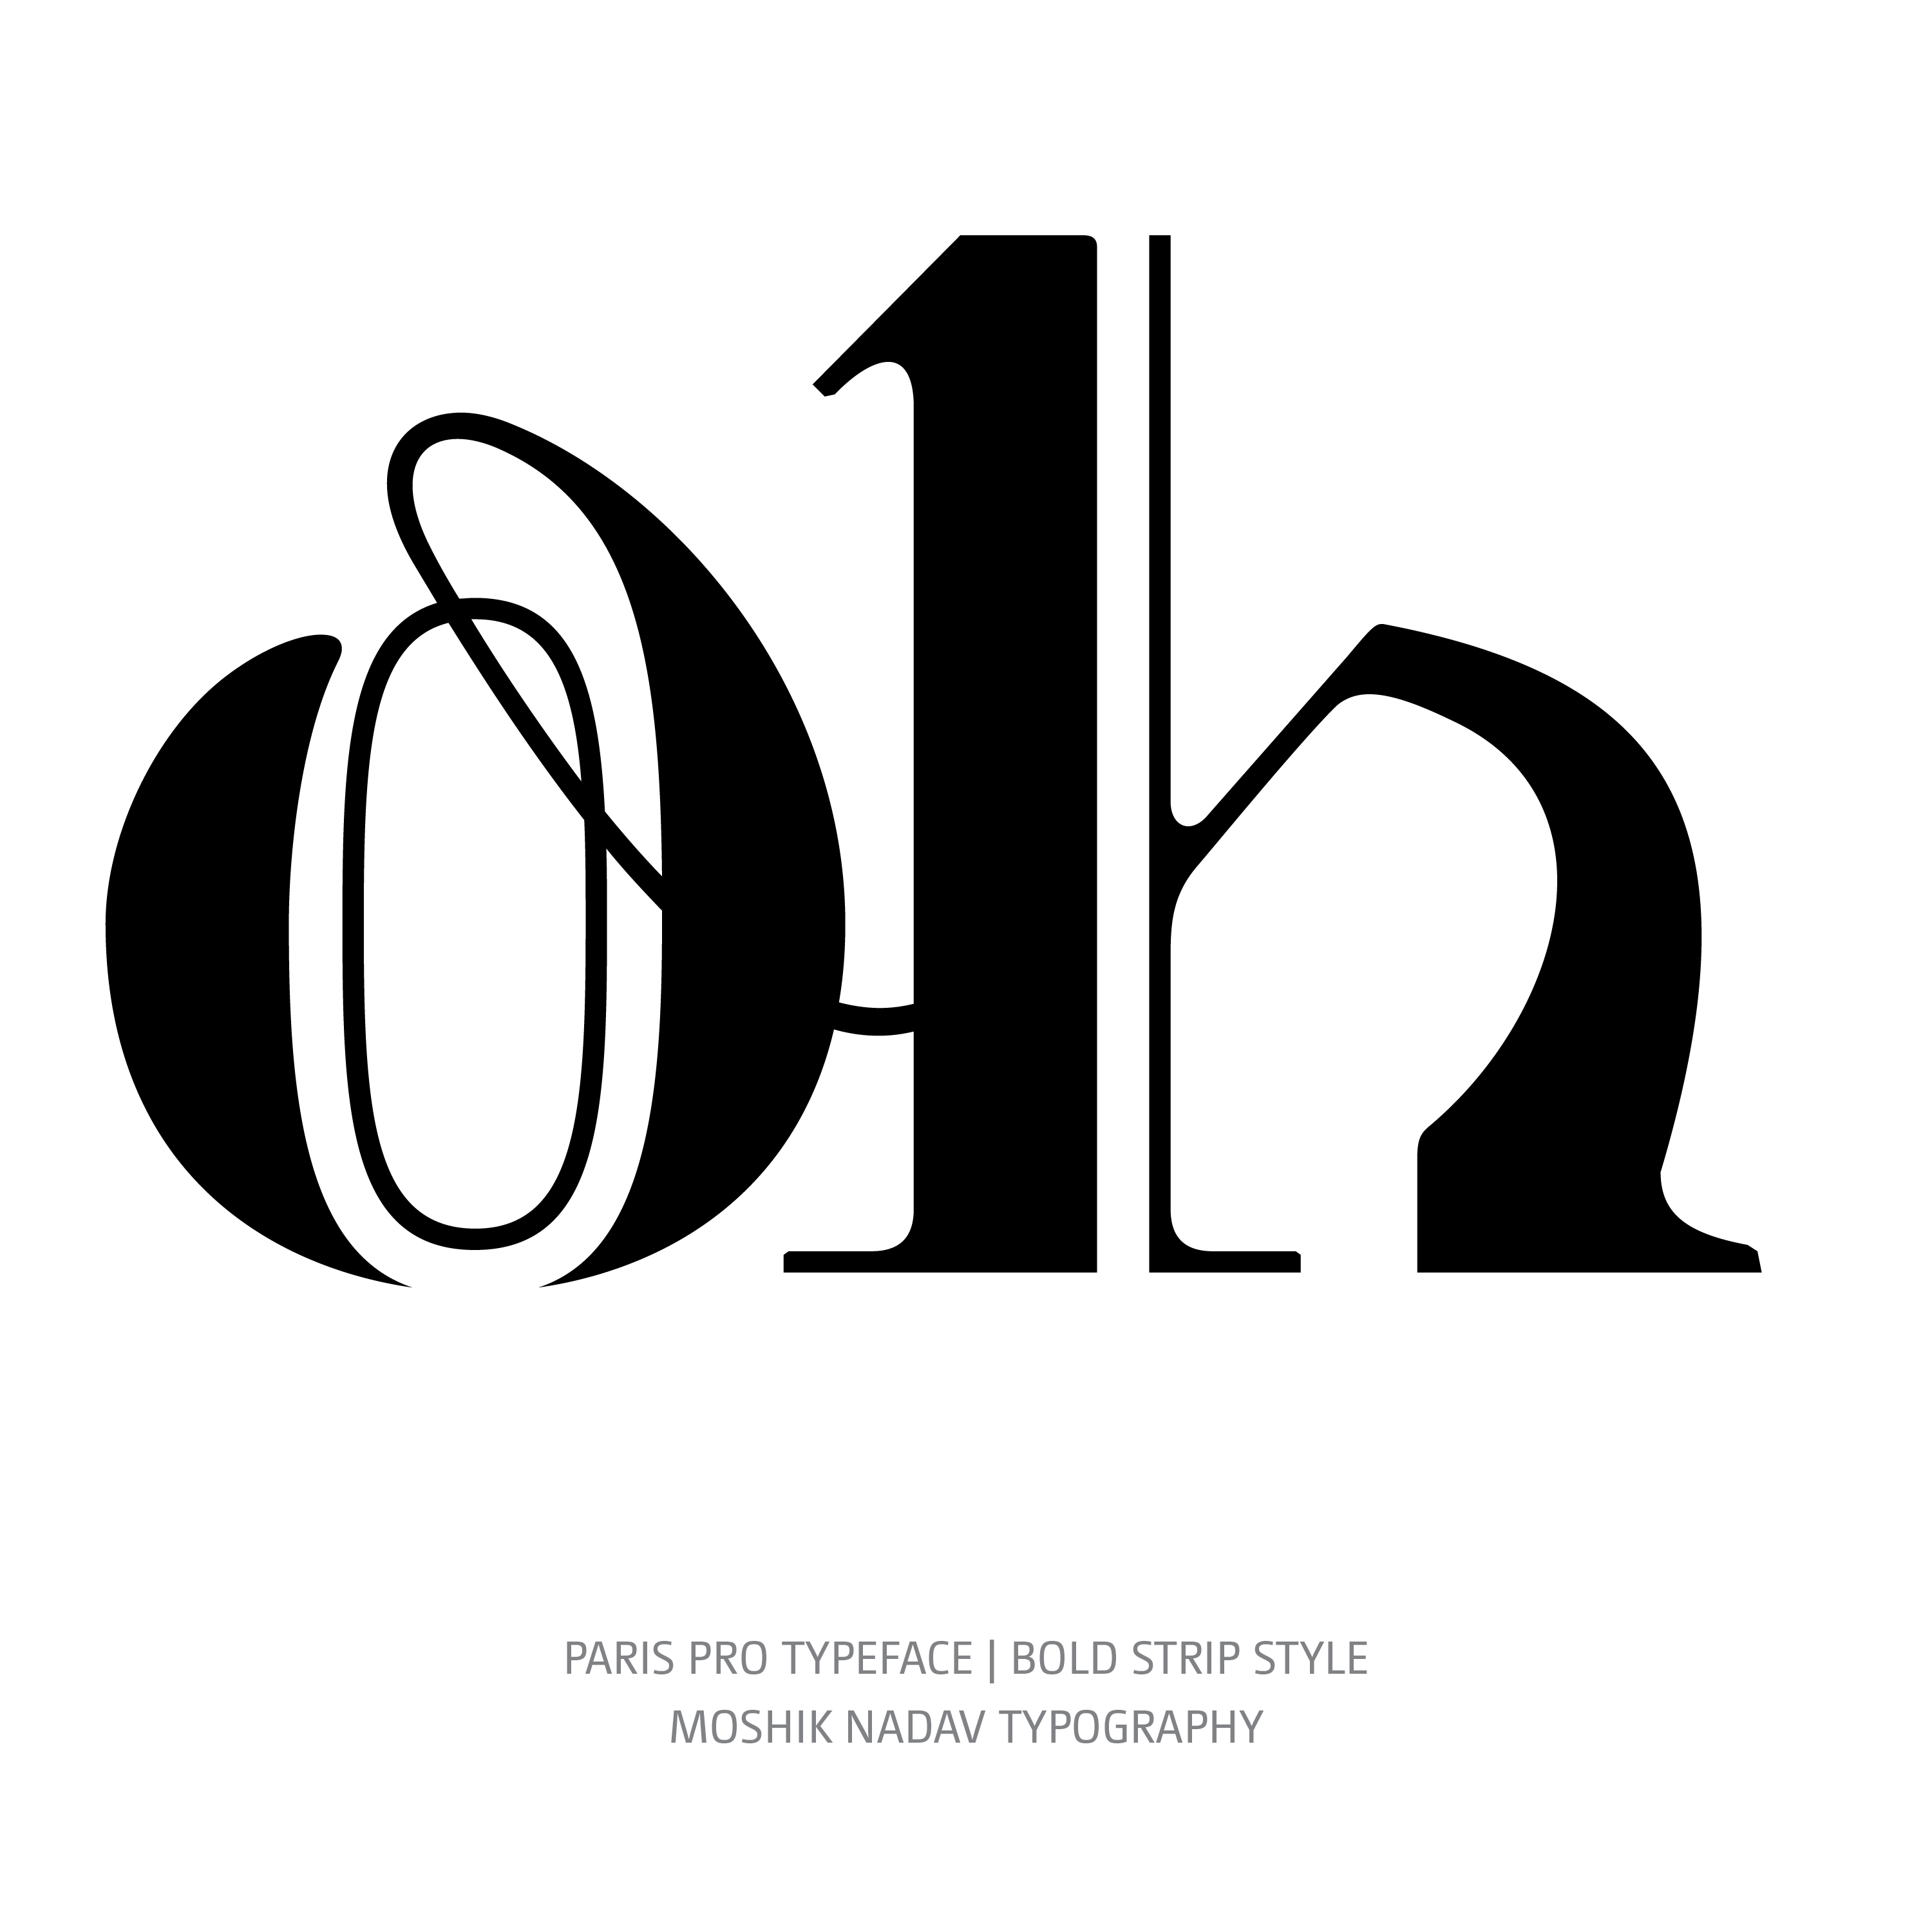 Paris Pro Typeface Bold Strip oh ligature